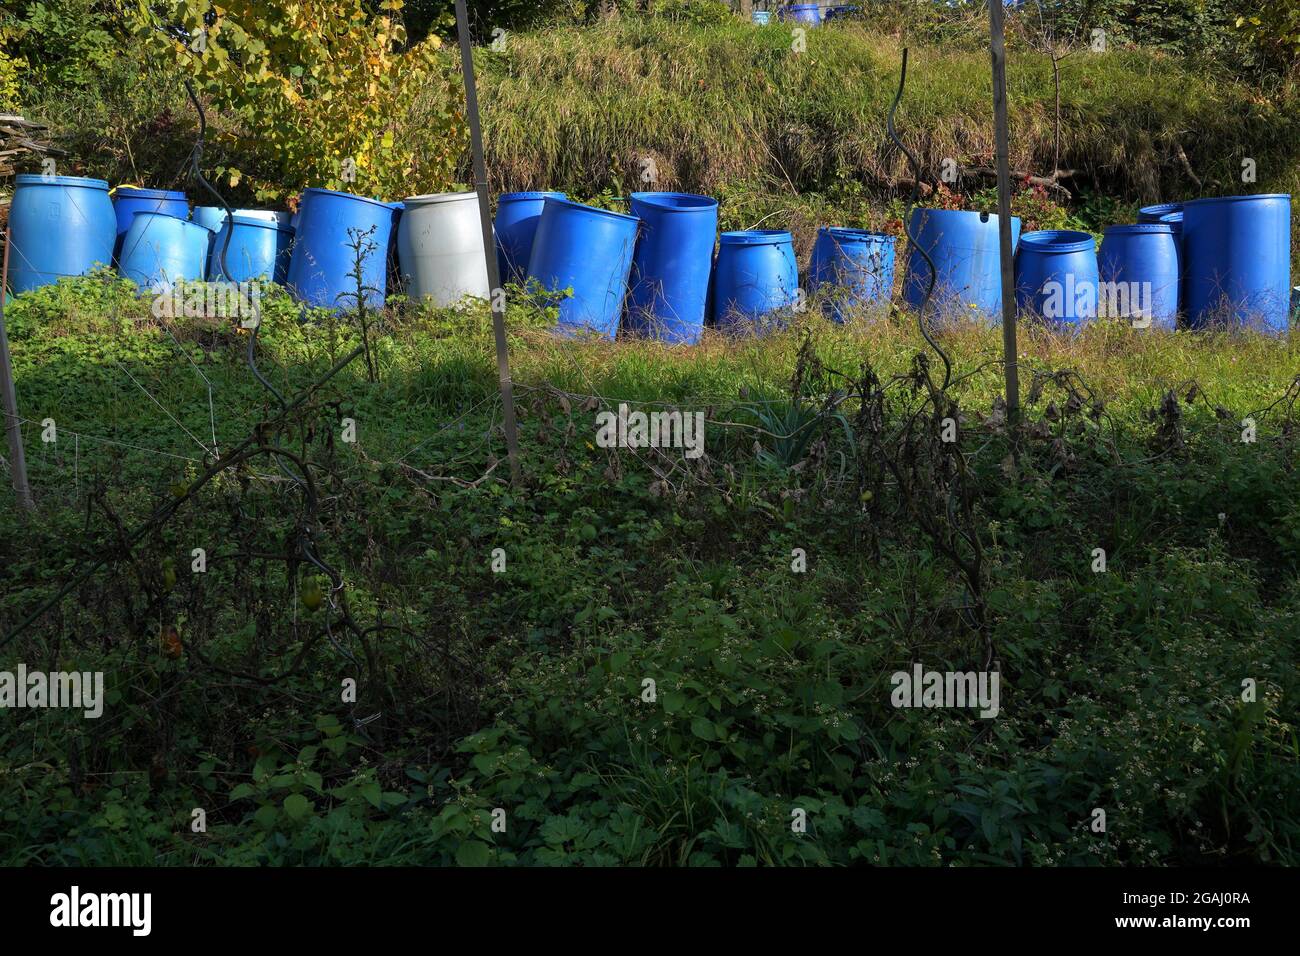 Barili di plastica per la fermentazione di frutta. Sono disposti in fila in giardino in autunno. I barili sono in diverse sfumature di colore blu. Foto Stock